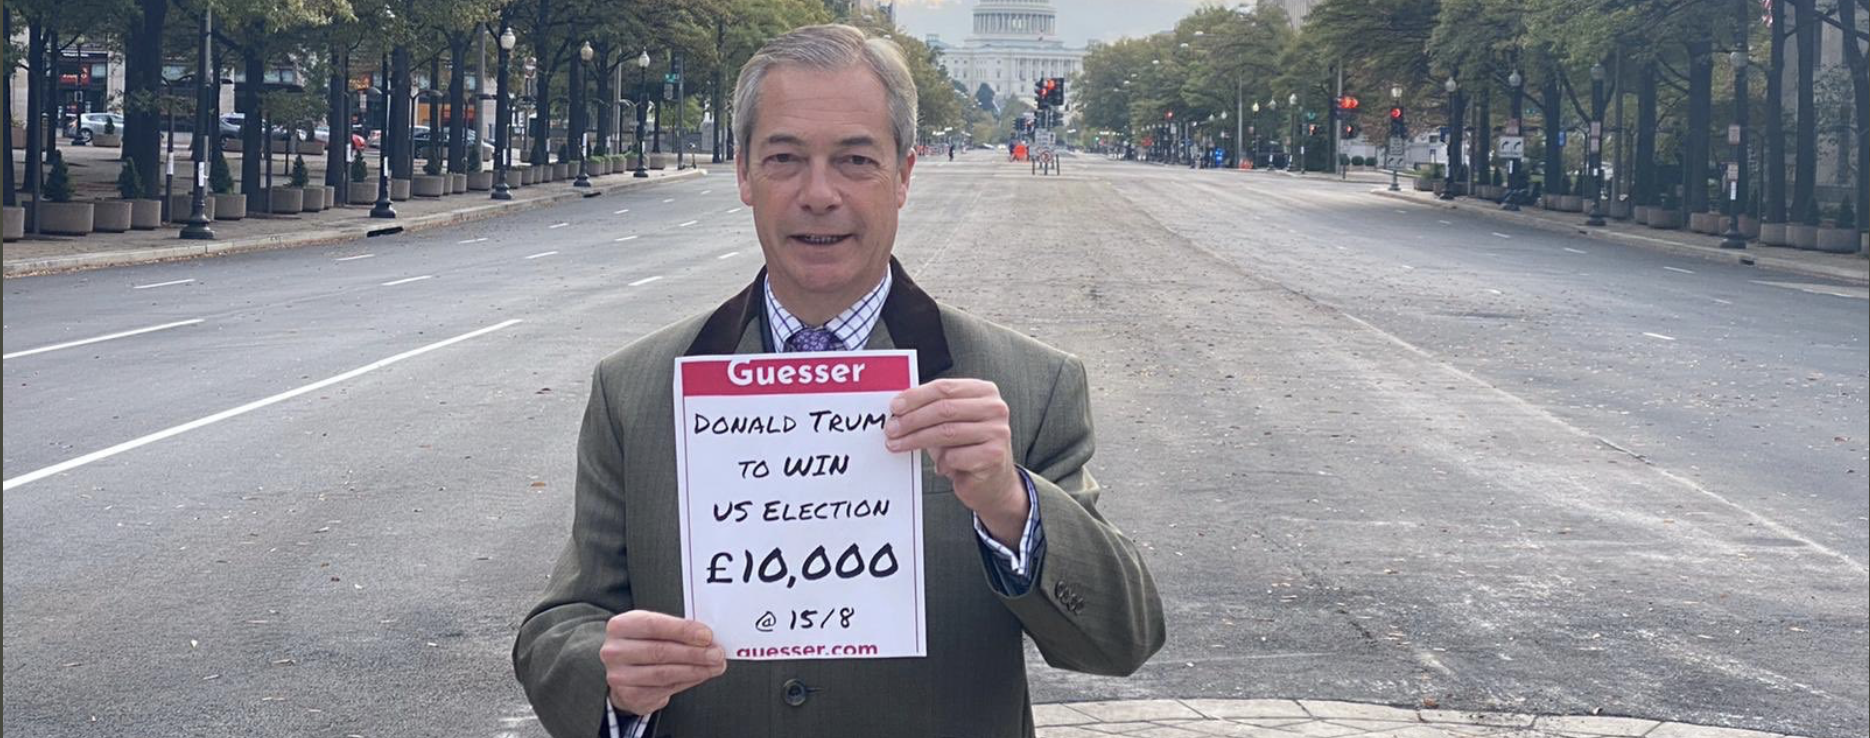 Een foto van Nigel Farage met een briefje over de weddenschap.